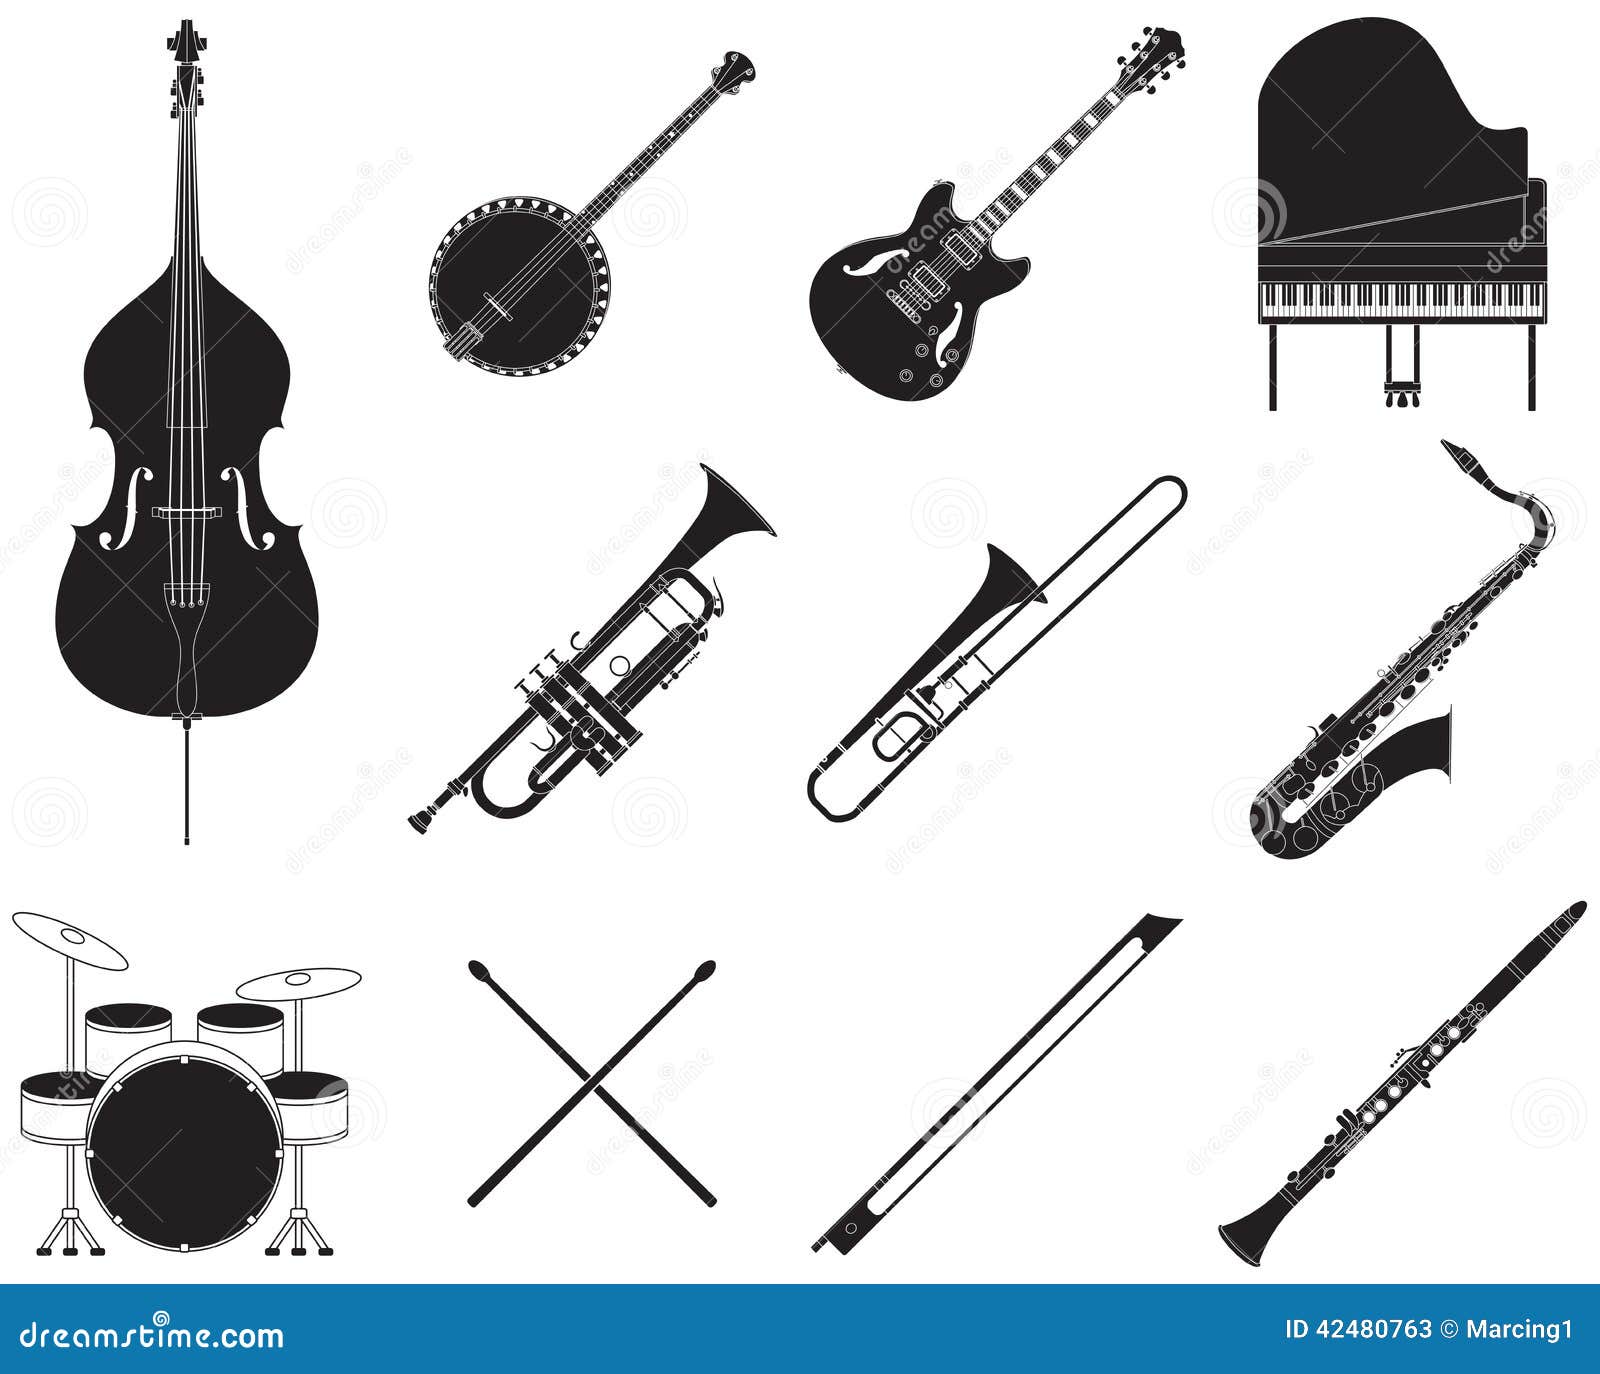 clipart gratuit instruments musique - photo #24